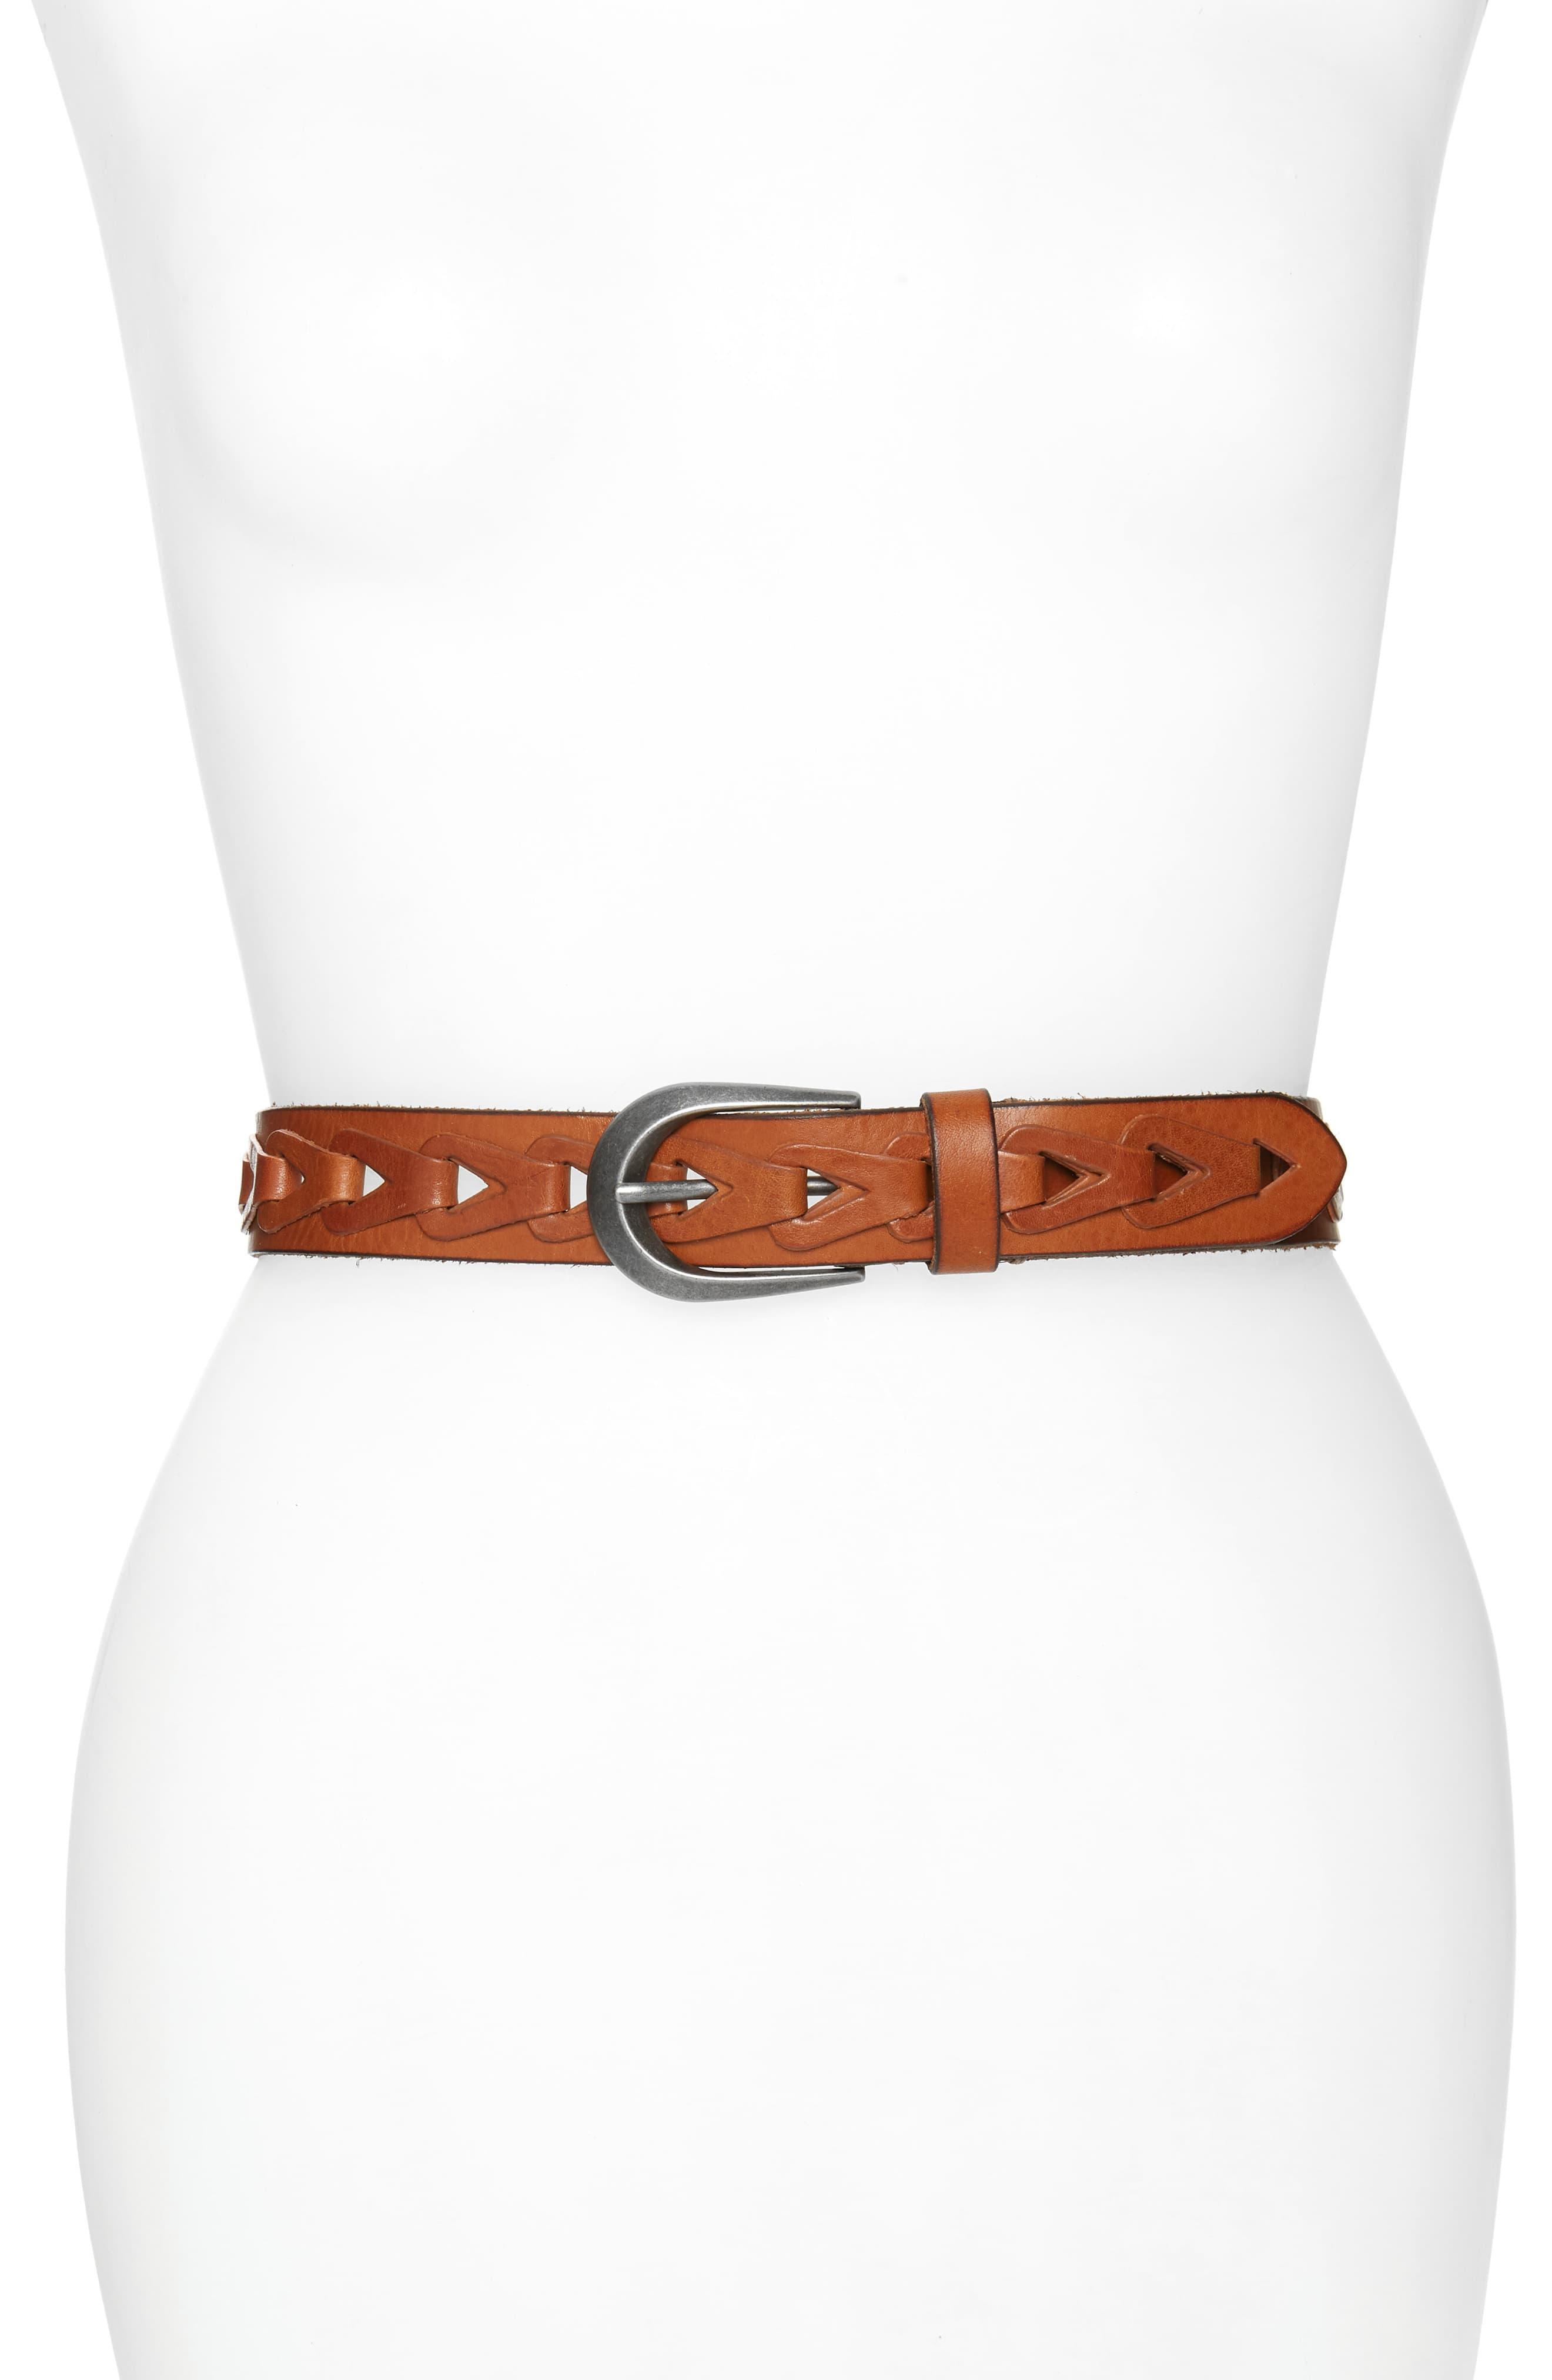 Frye Woven Leather Belt in Tan (Brown) - Lyst